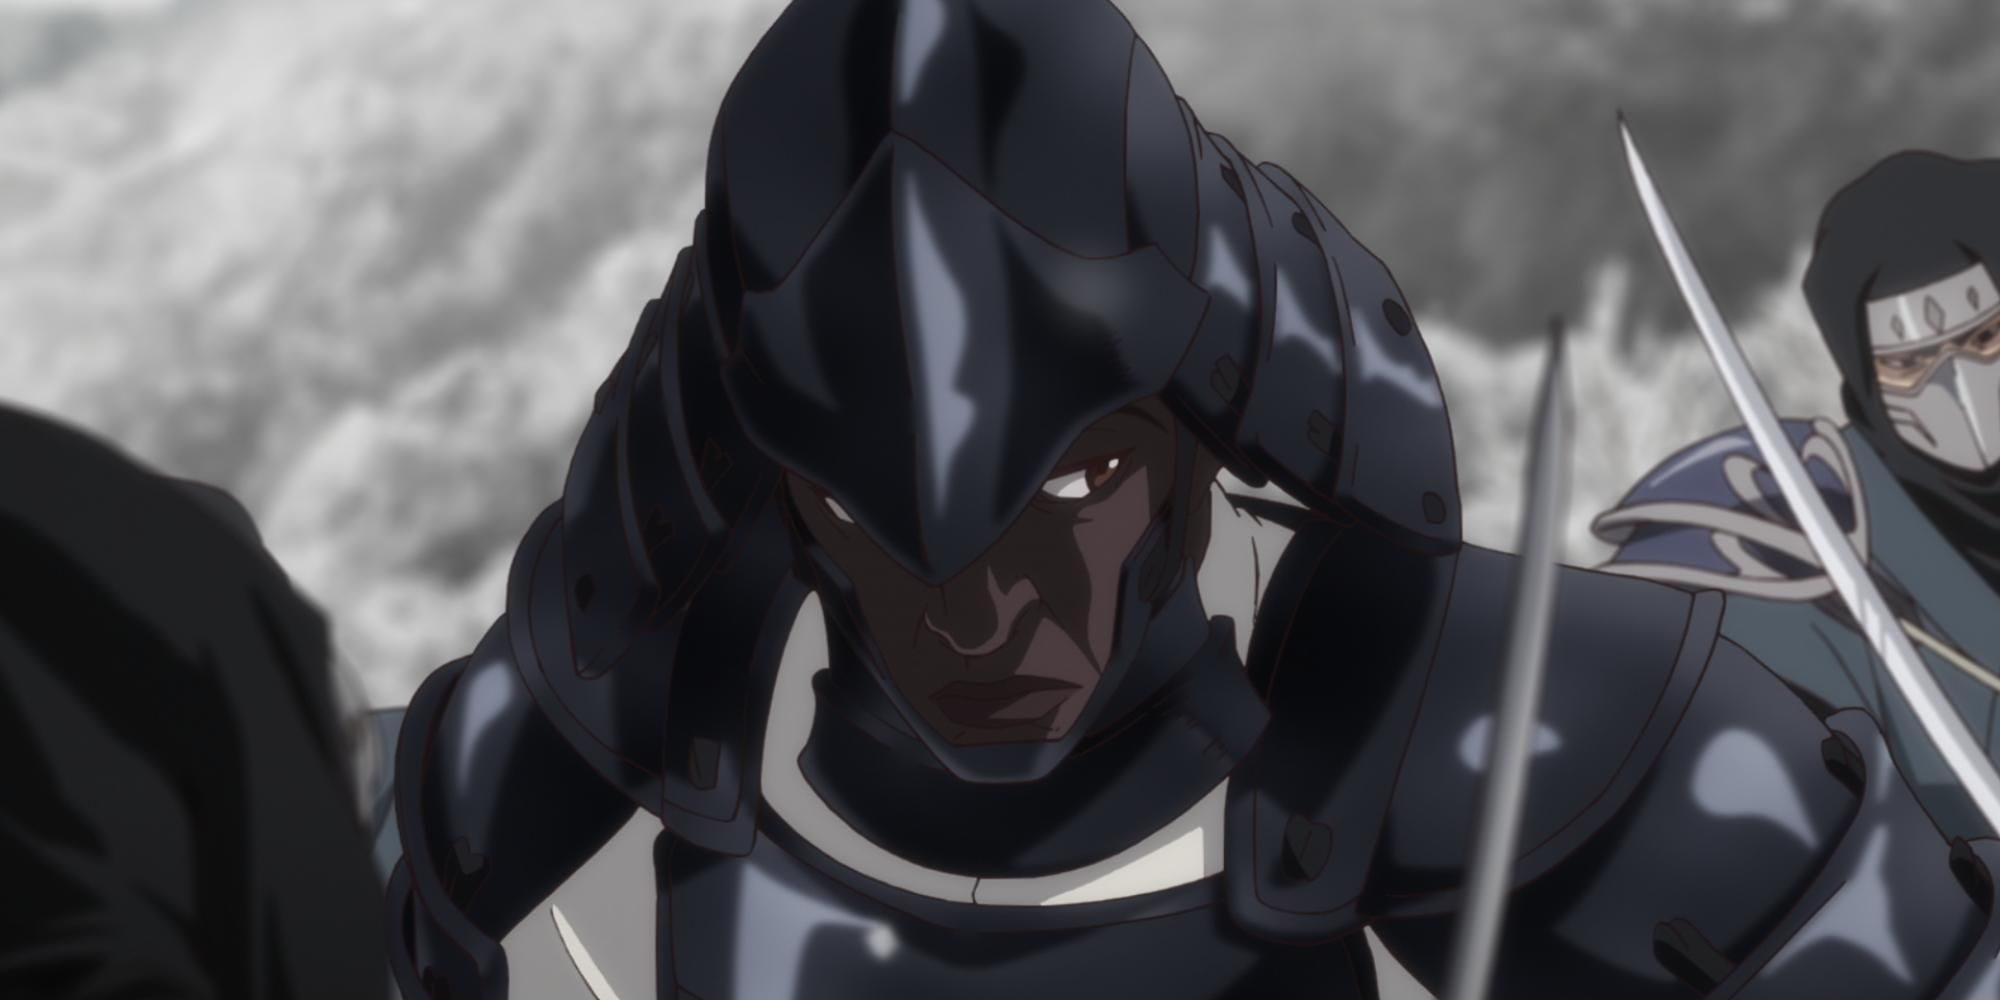 Yasuke in armor